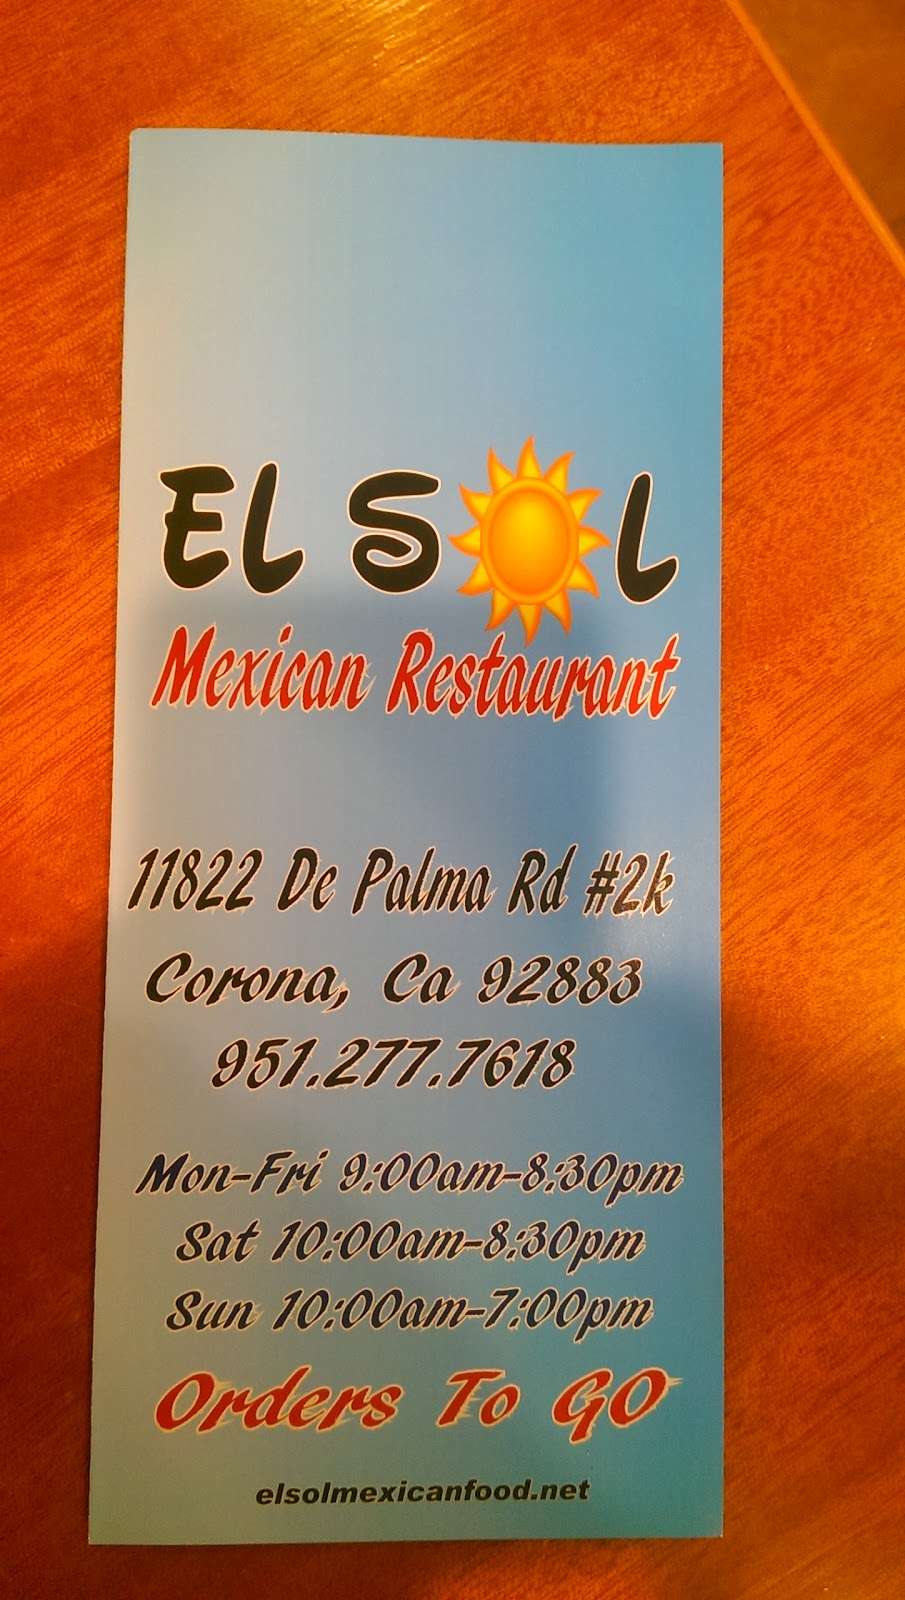 El Sol Mexican Restaurant | 11822 De Palma Rd #2k, Corona, CA 92883, USA | Phone: (951) 277-7618